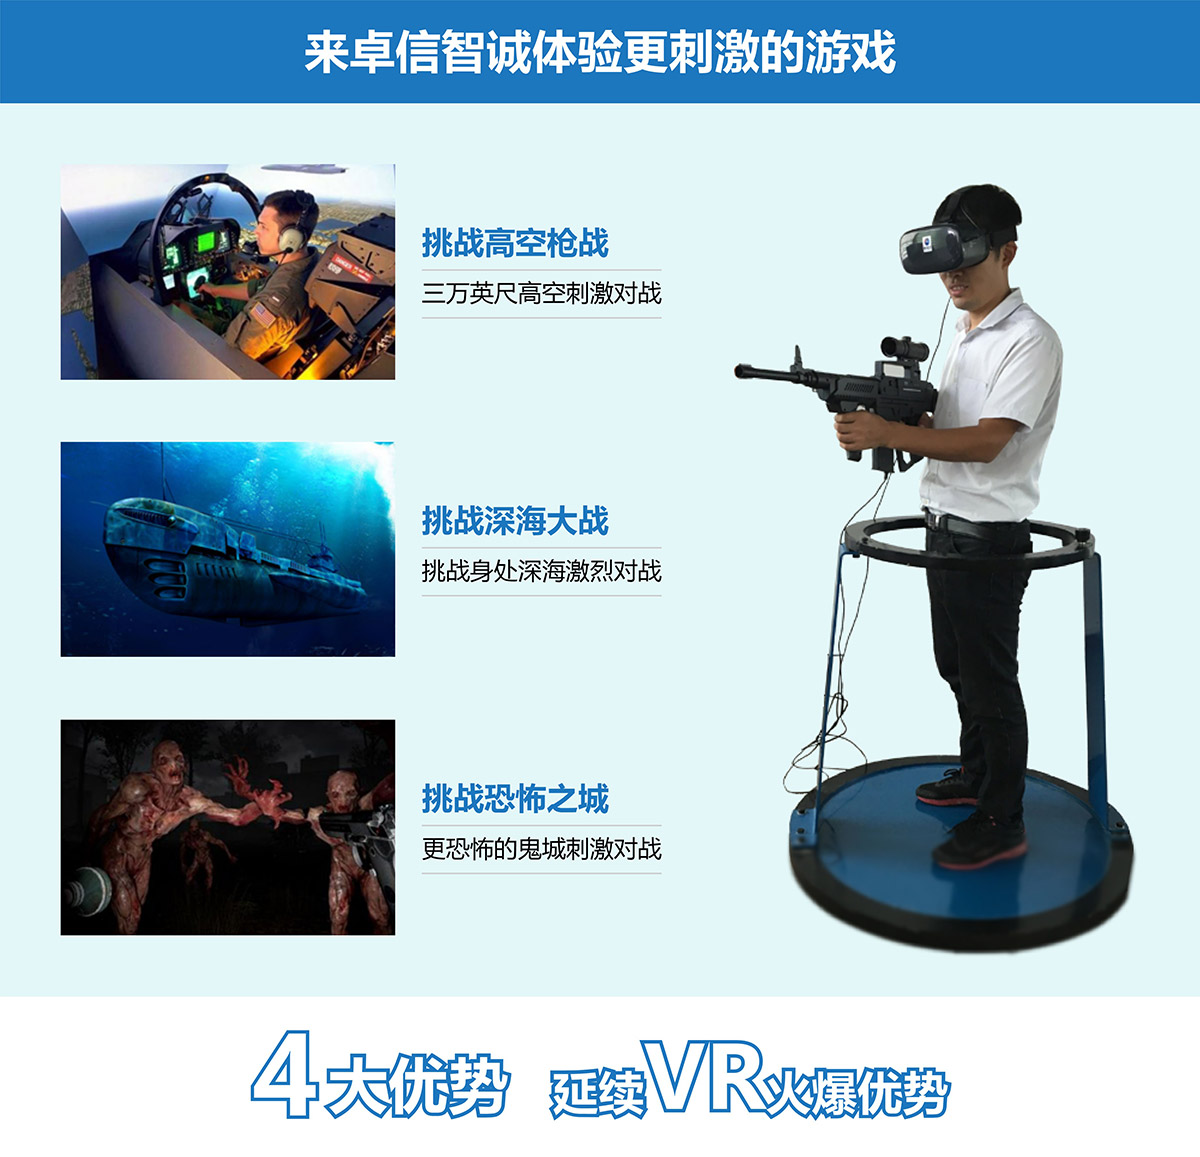 奇影幻境VR对战4大优势延续vr火爆优势.jpg